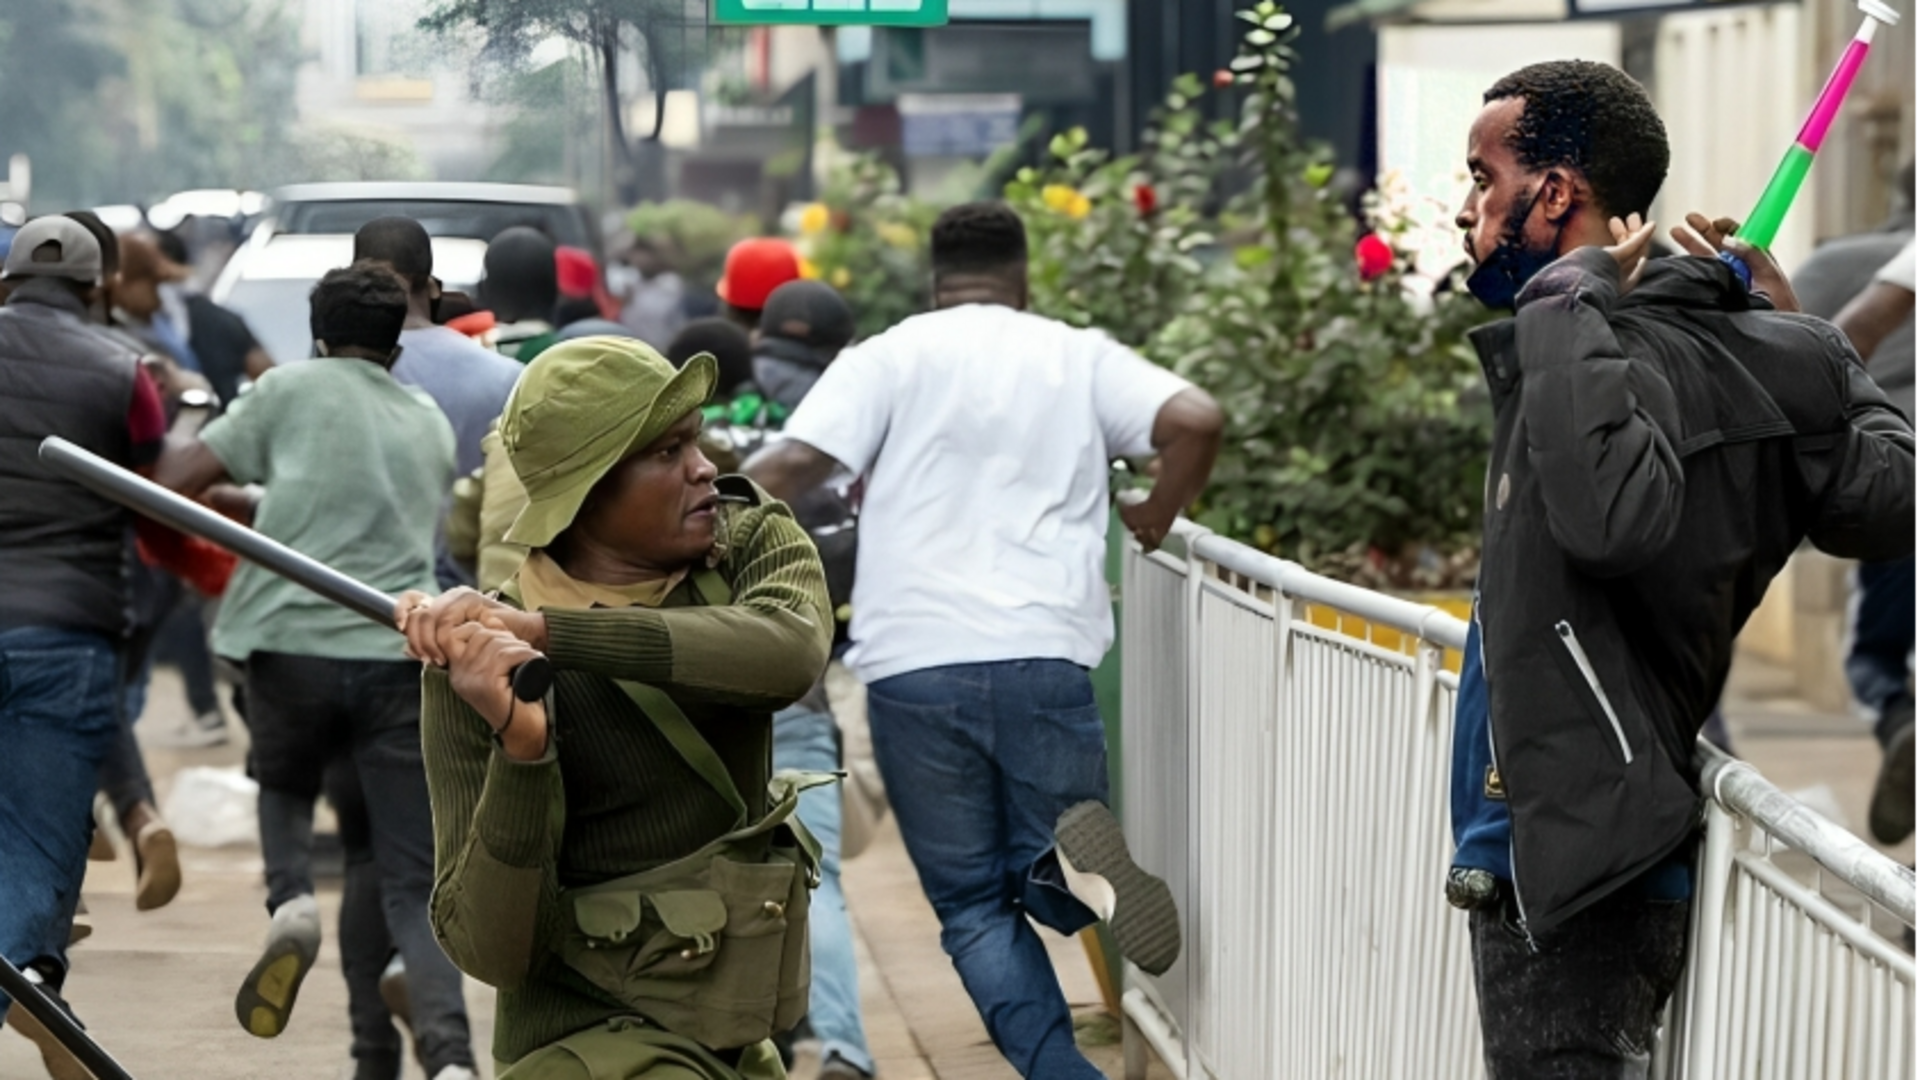 केन्या: टैक्स बिल से भड़के लोगों ने संसद में आग लगाई, गोलीबारी में 5 की मौत